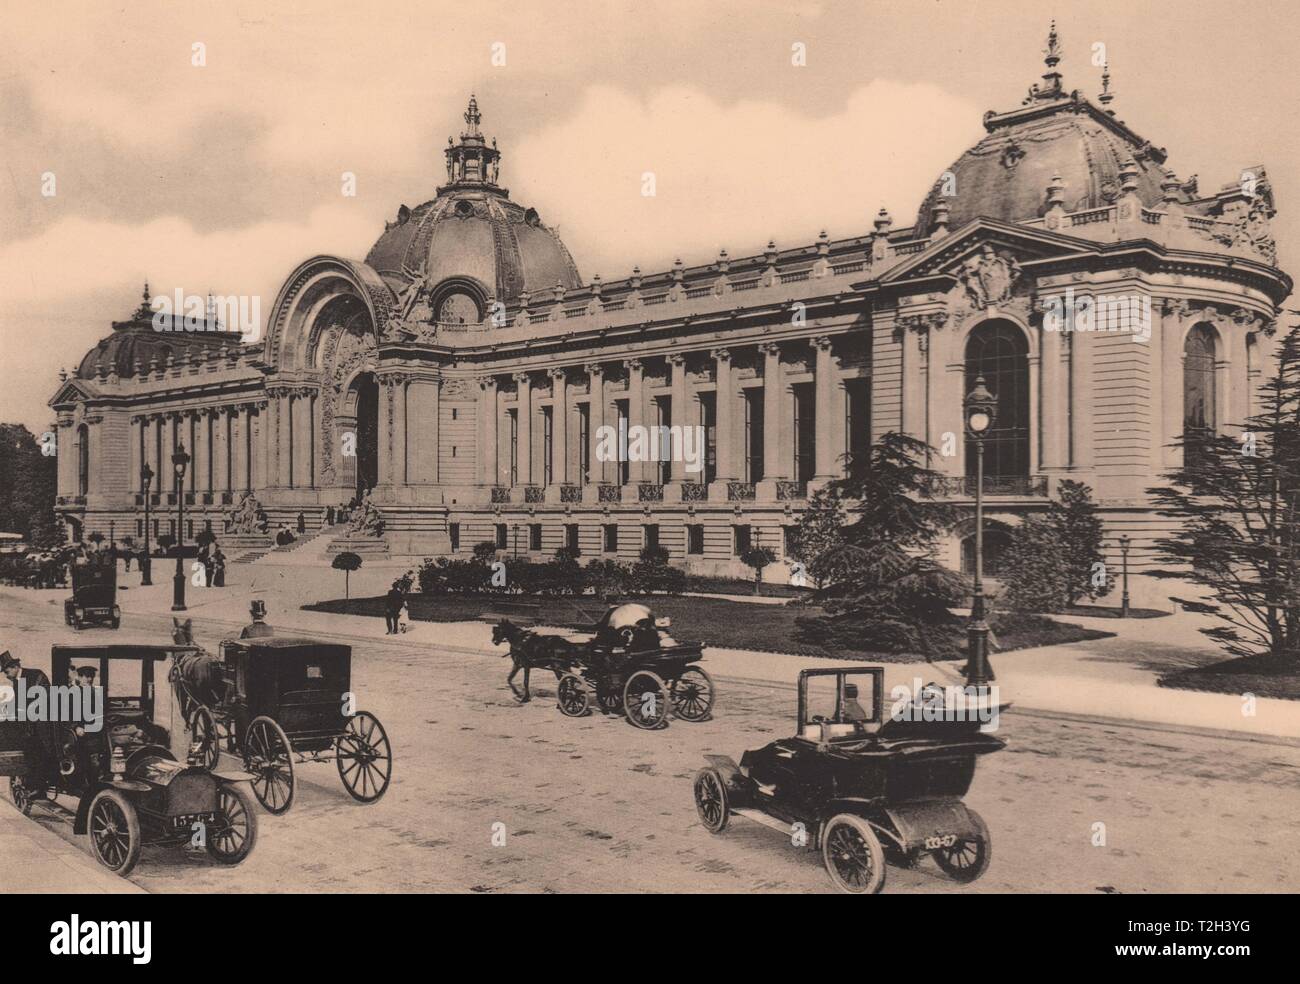 Paris - Le Petit Palais des Champs-Elysees L. D. Vintage Post Card